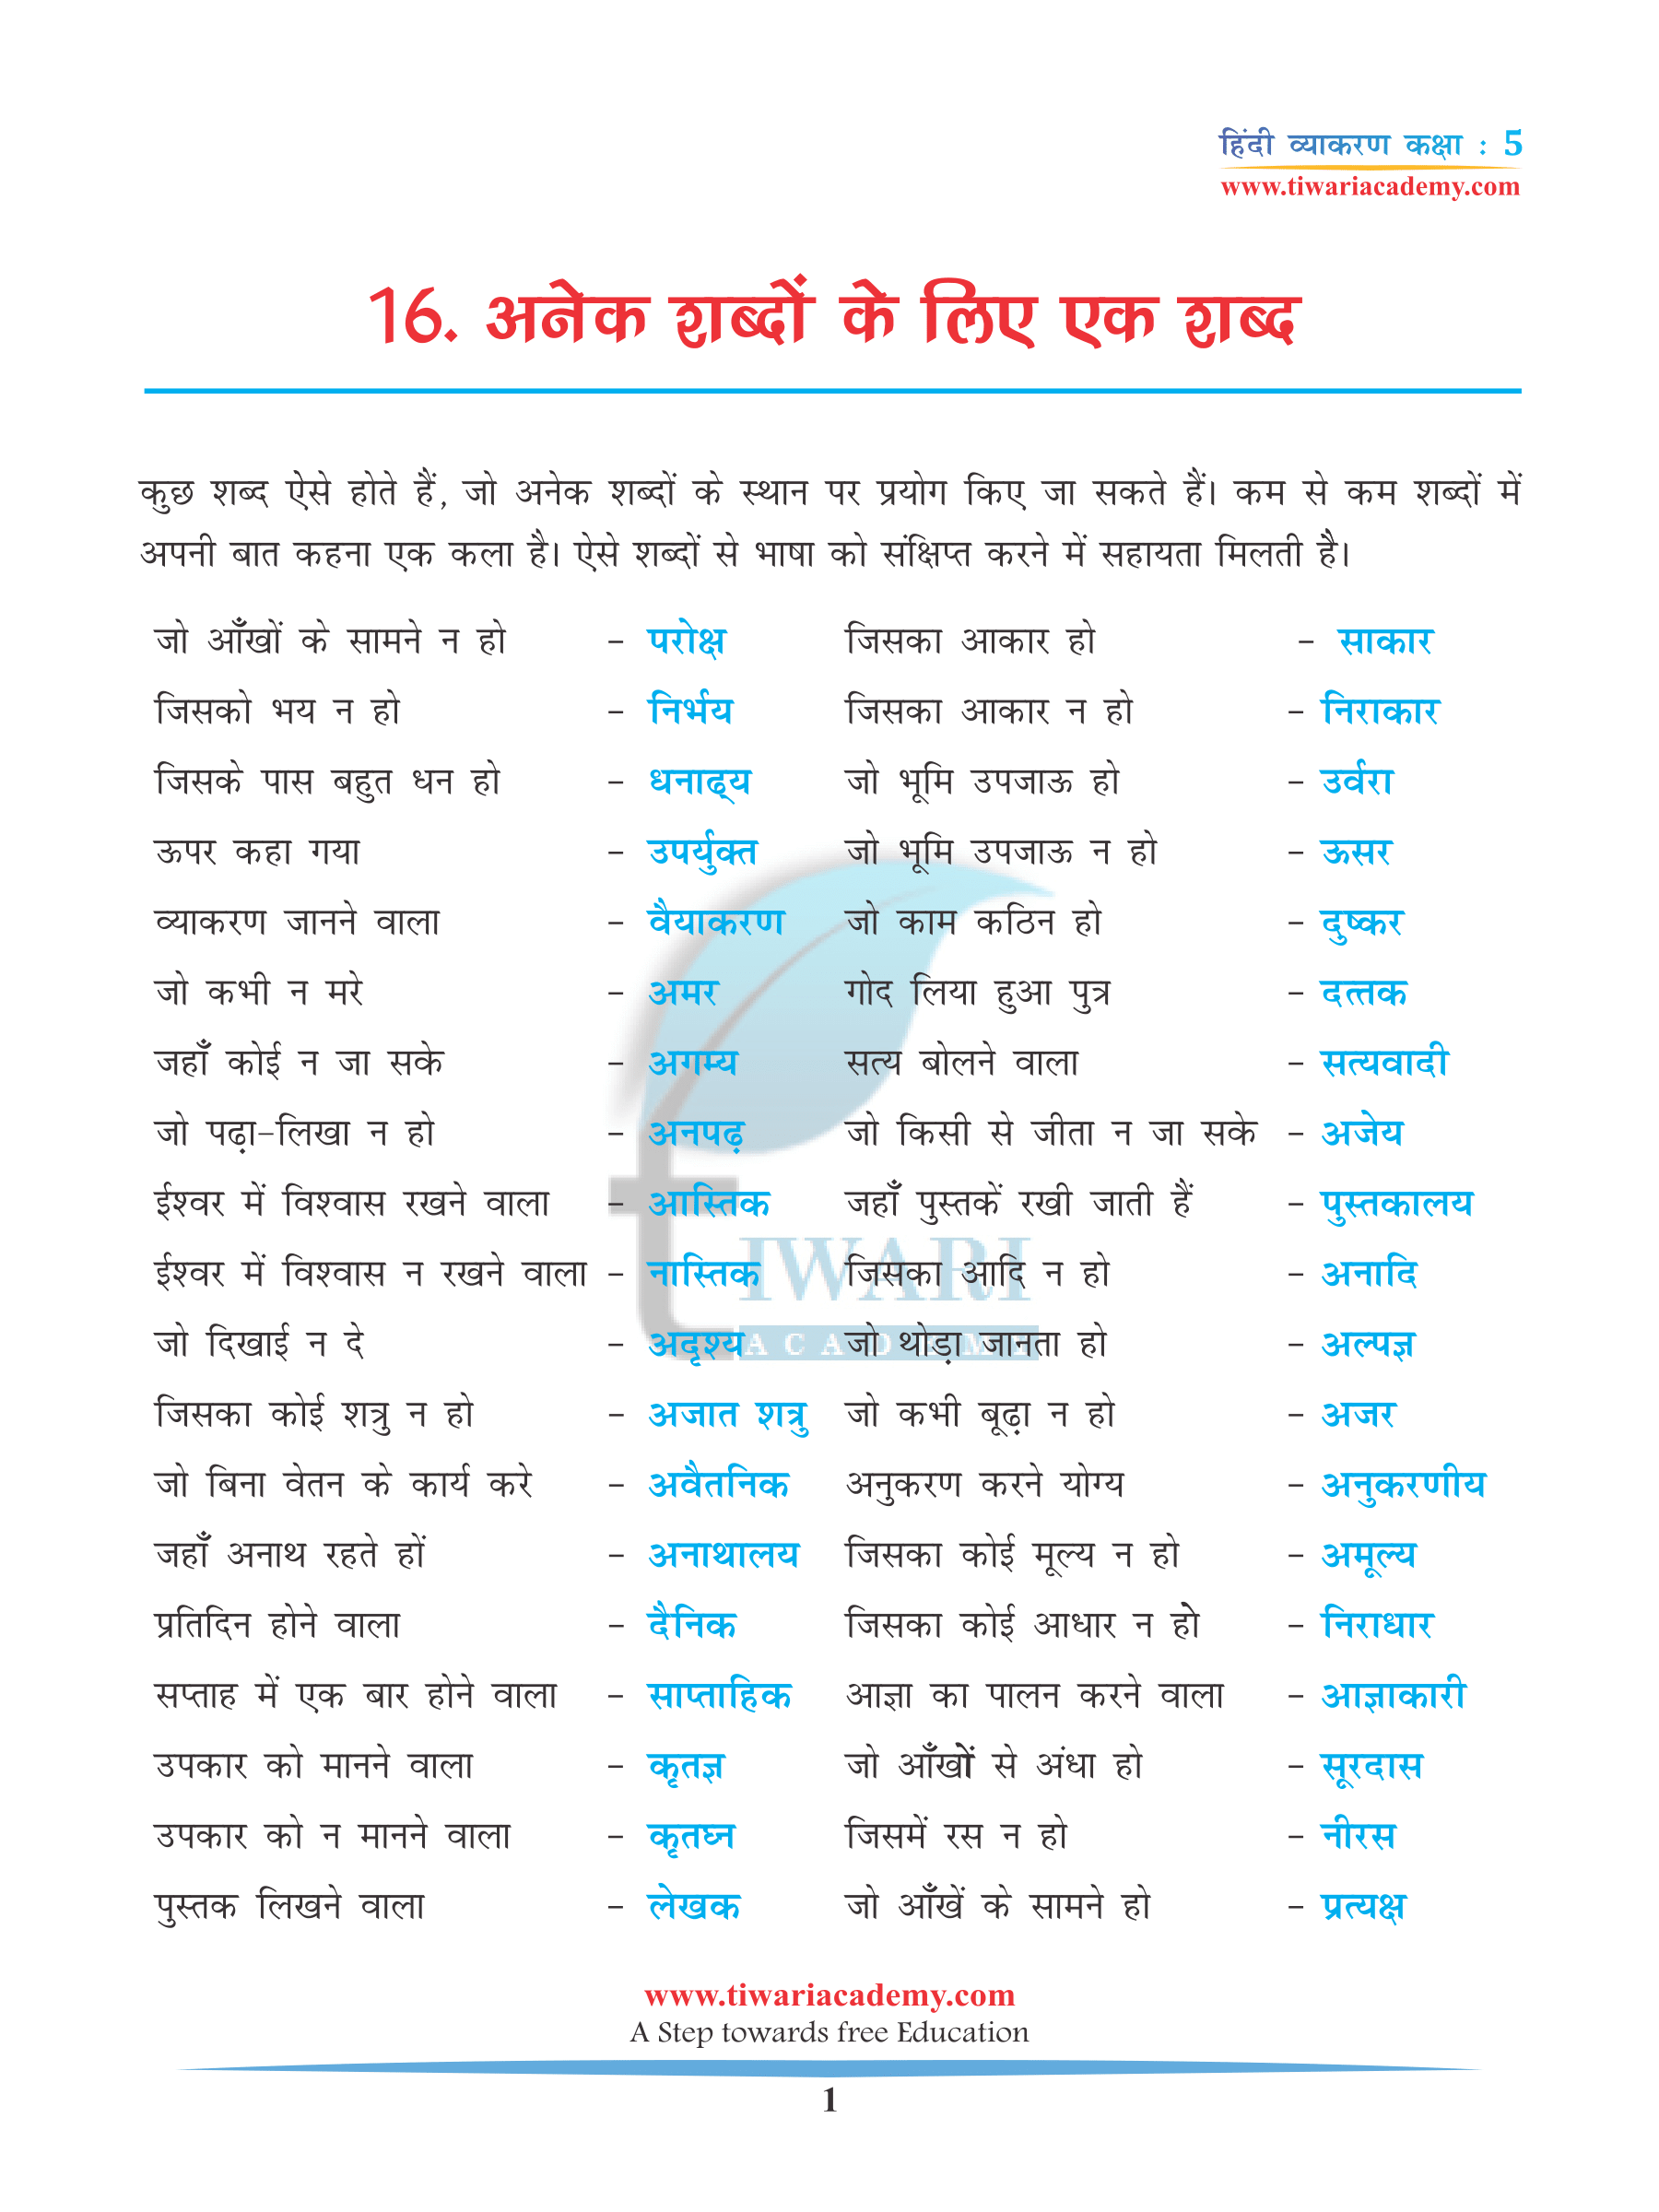 Class 5 Hindi Grammar Chapter 16 Anek ke lie ek shabd